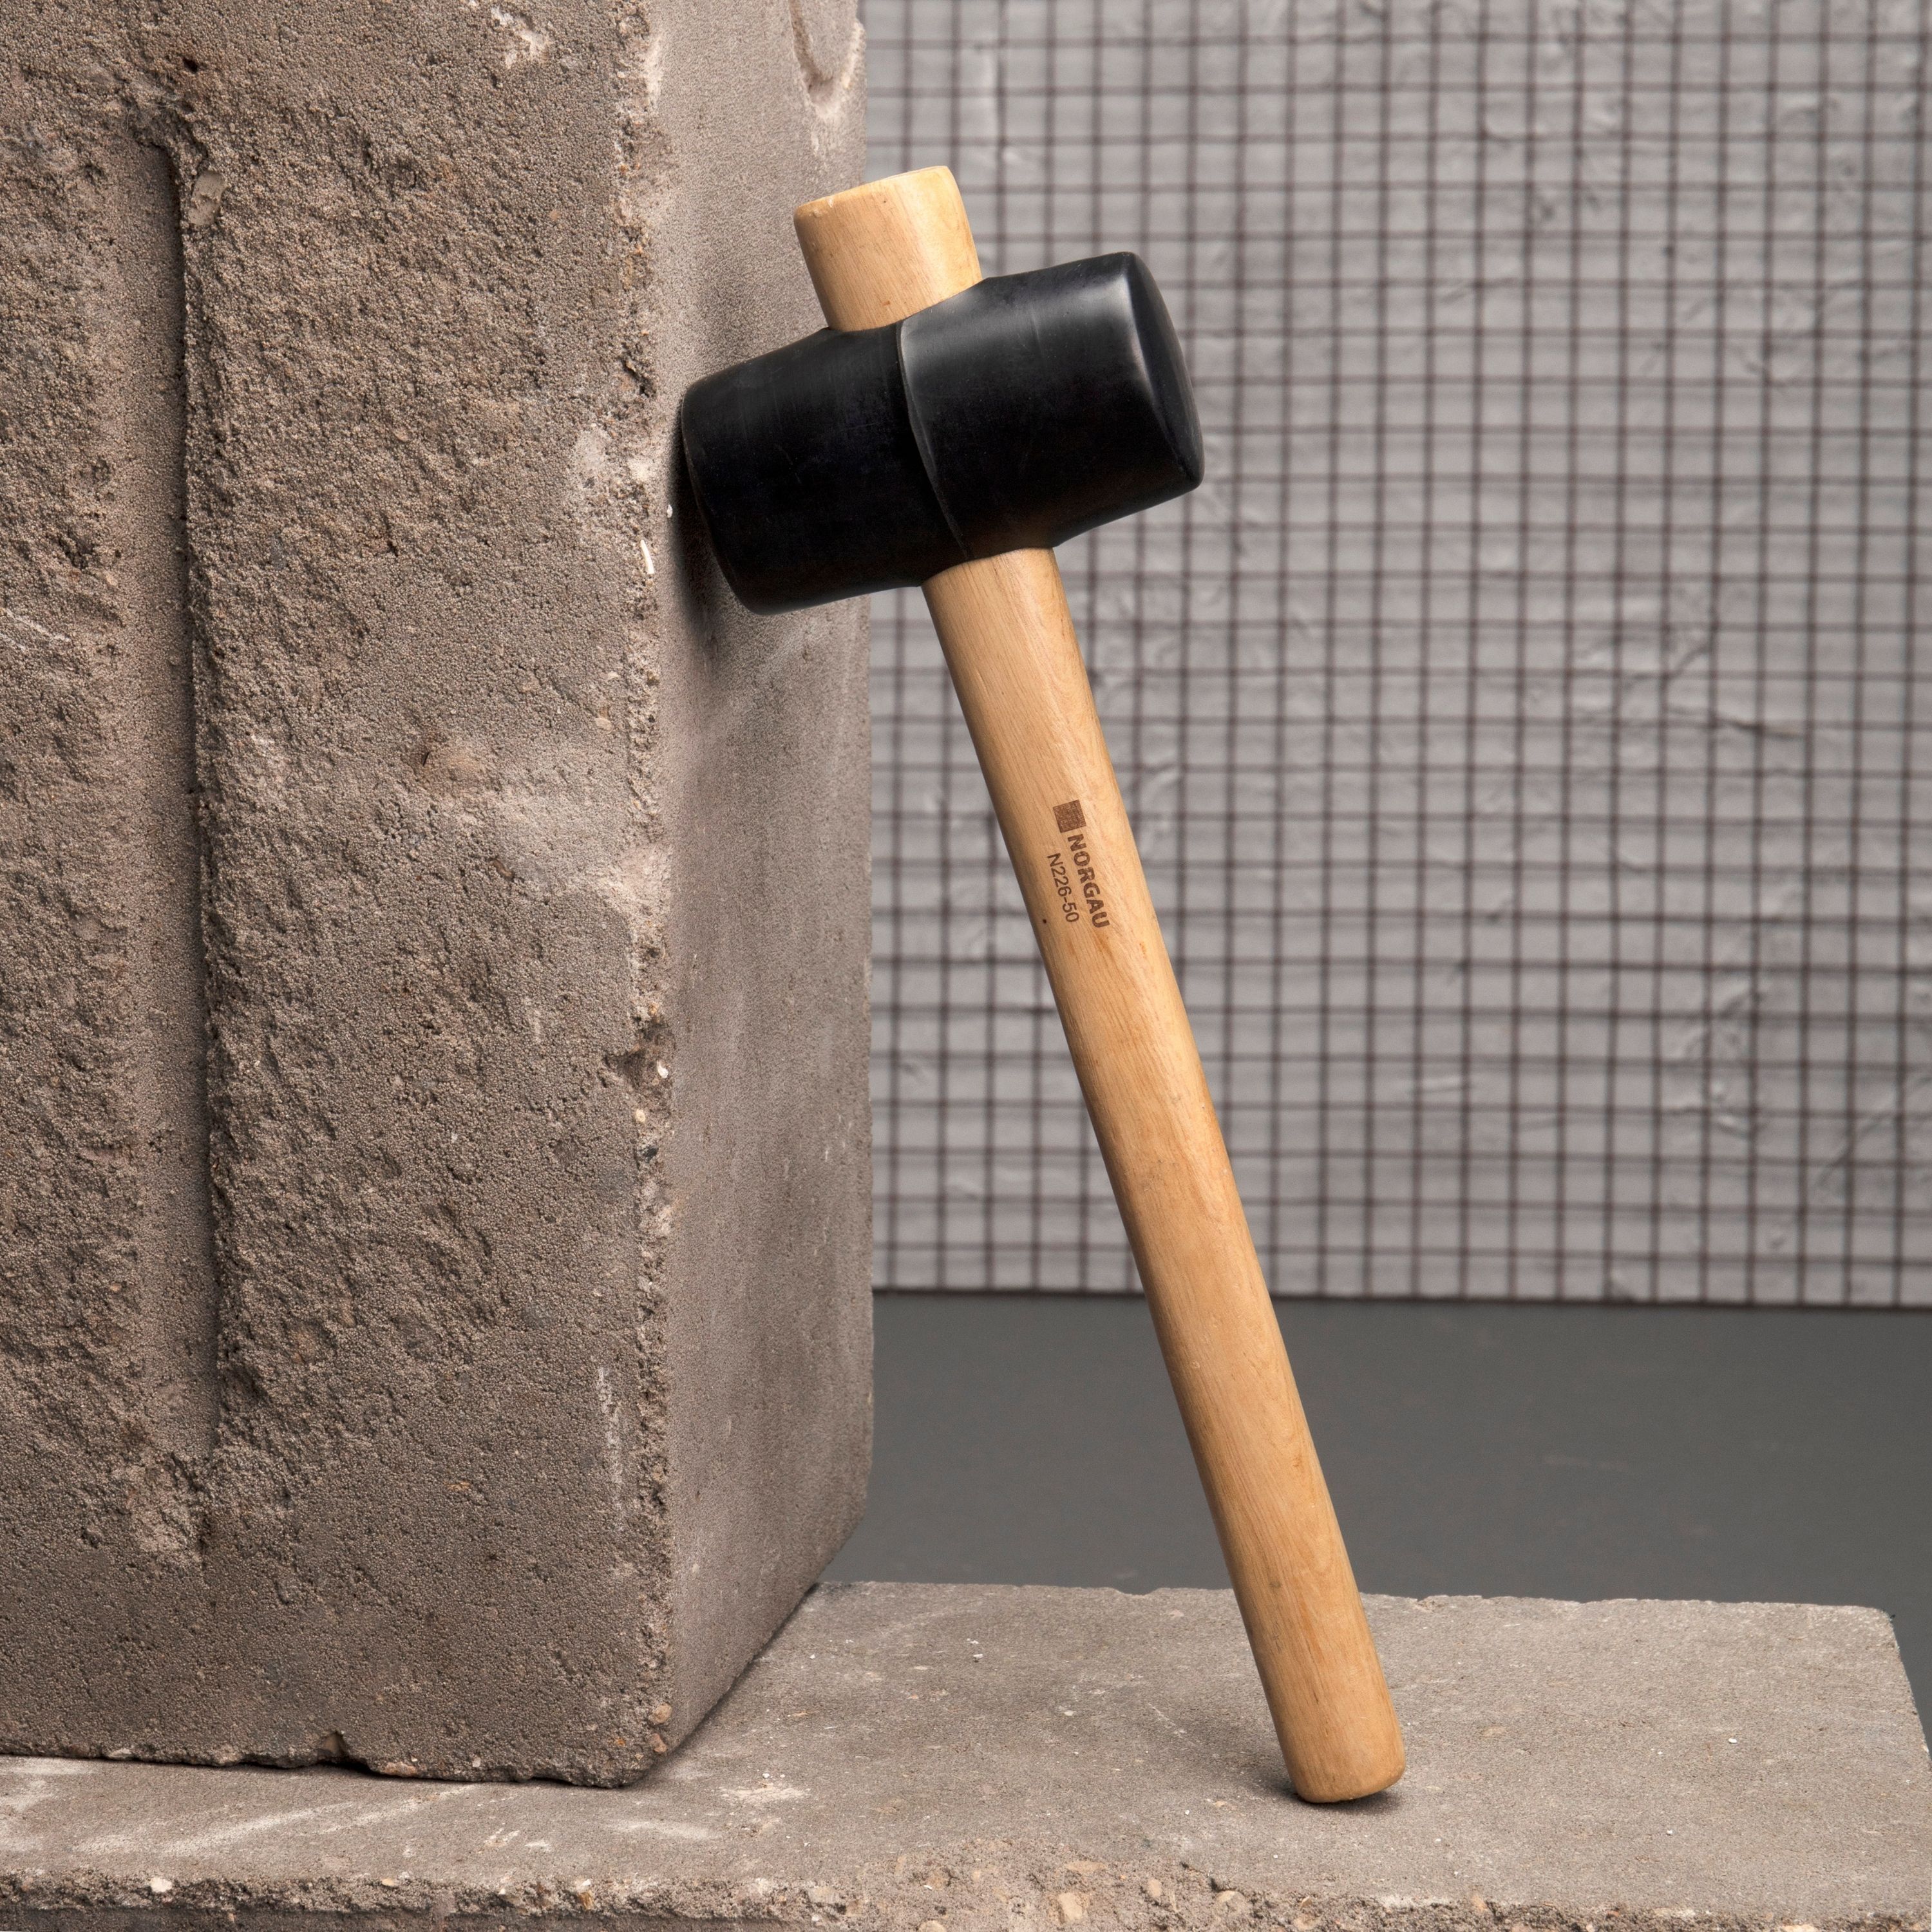 киянка зубр 450г чёрная резиновая с деревянной рукояткой Резиновая киянка NORGAU Industrial с рукояткой из древесины гикори, диаметр бойка 50 мм